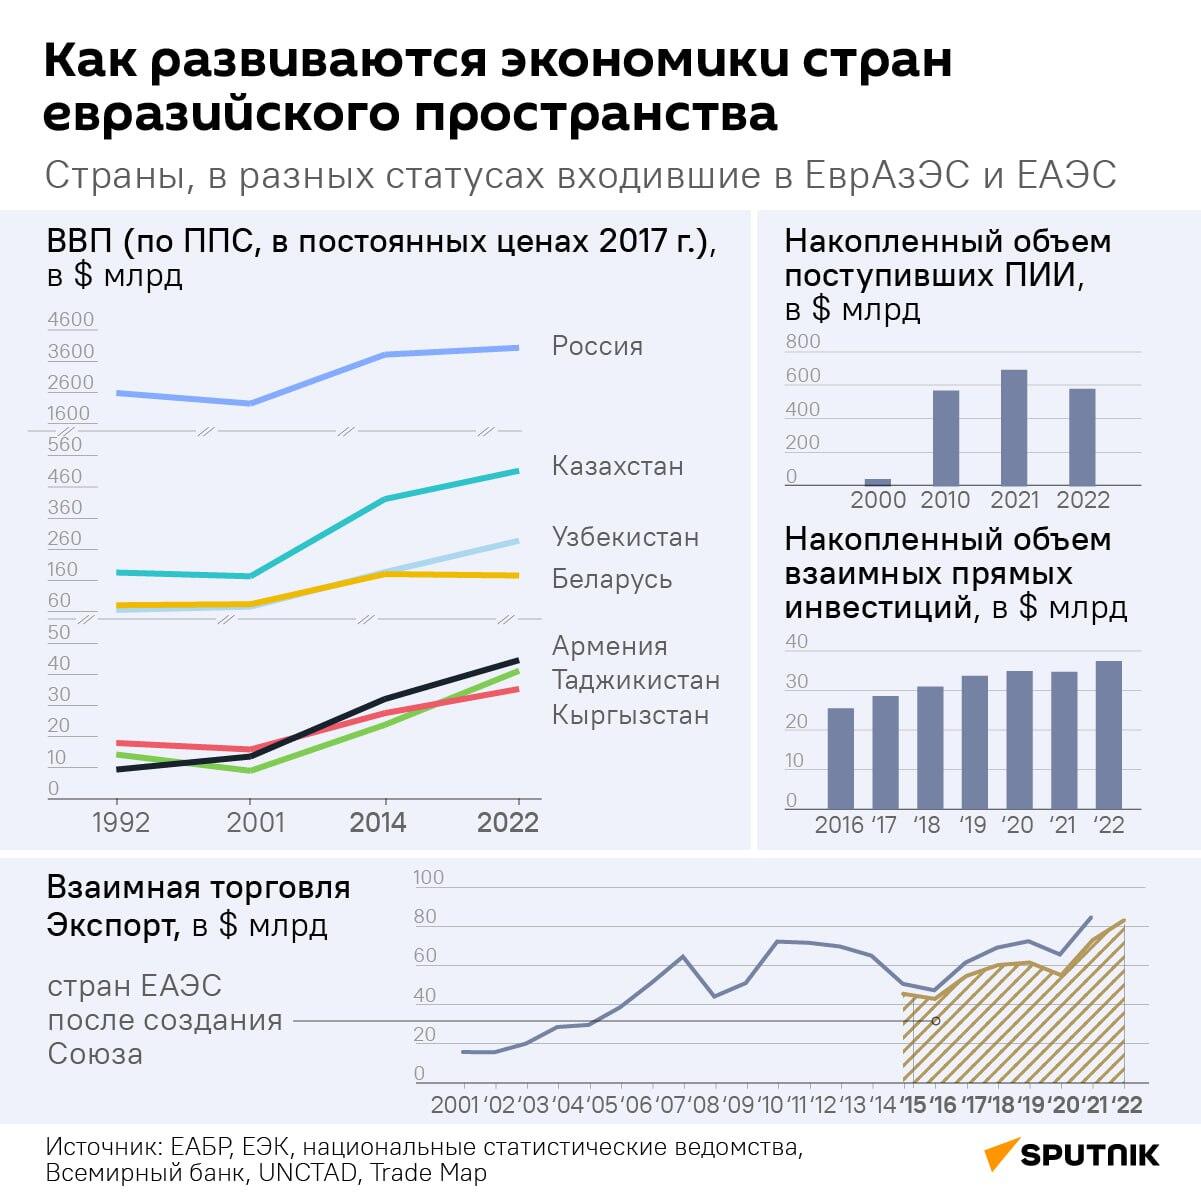 Как изменились экономики стран евразийского пространства за 23 года  - Sputnik Беларусь